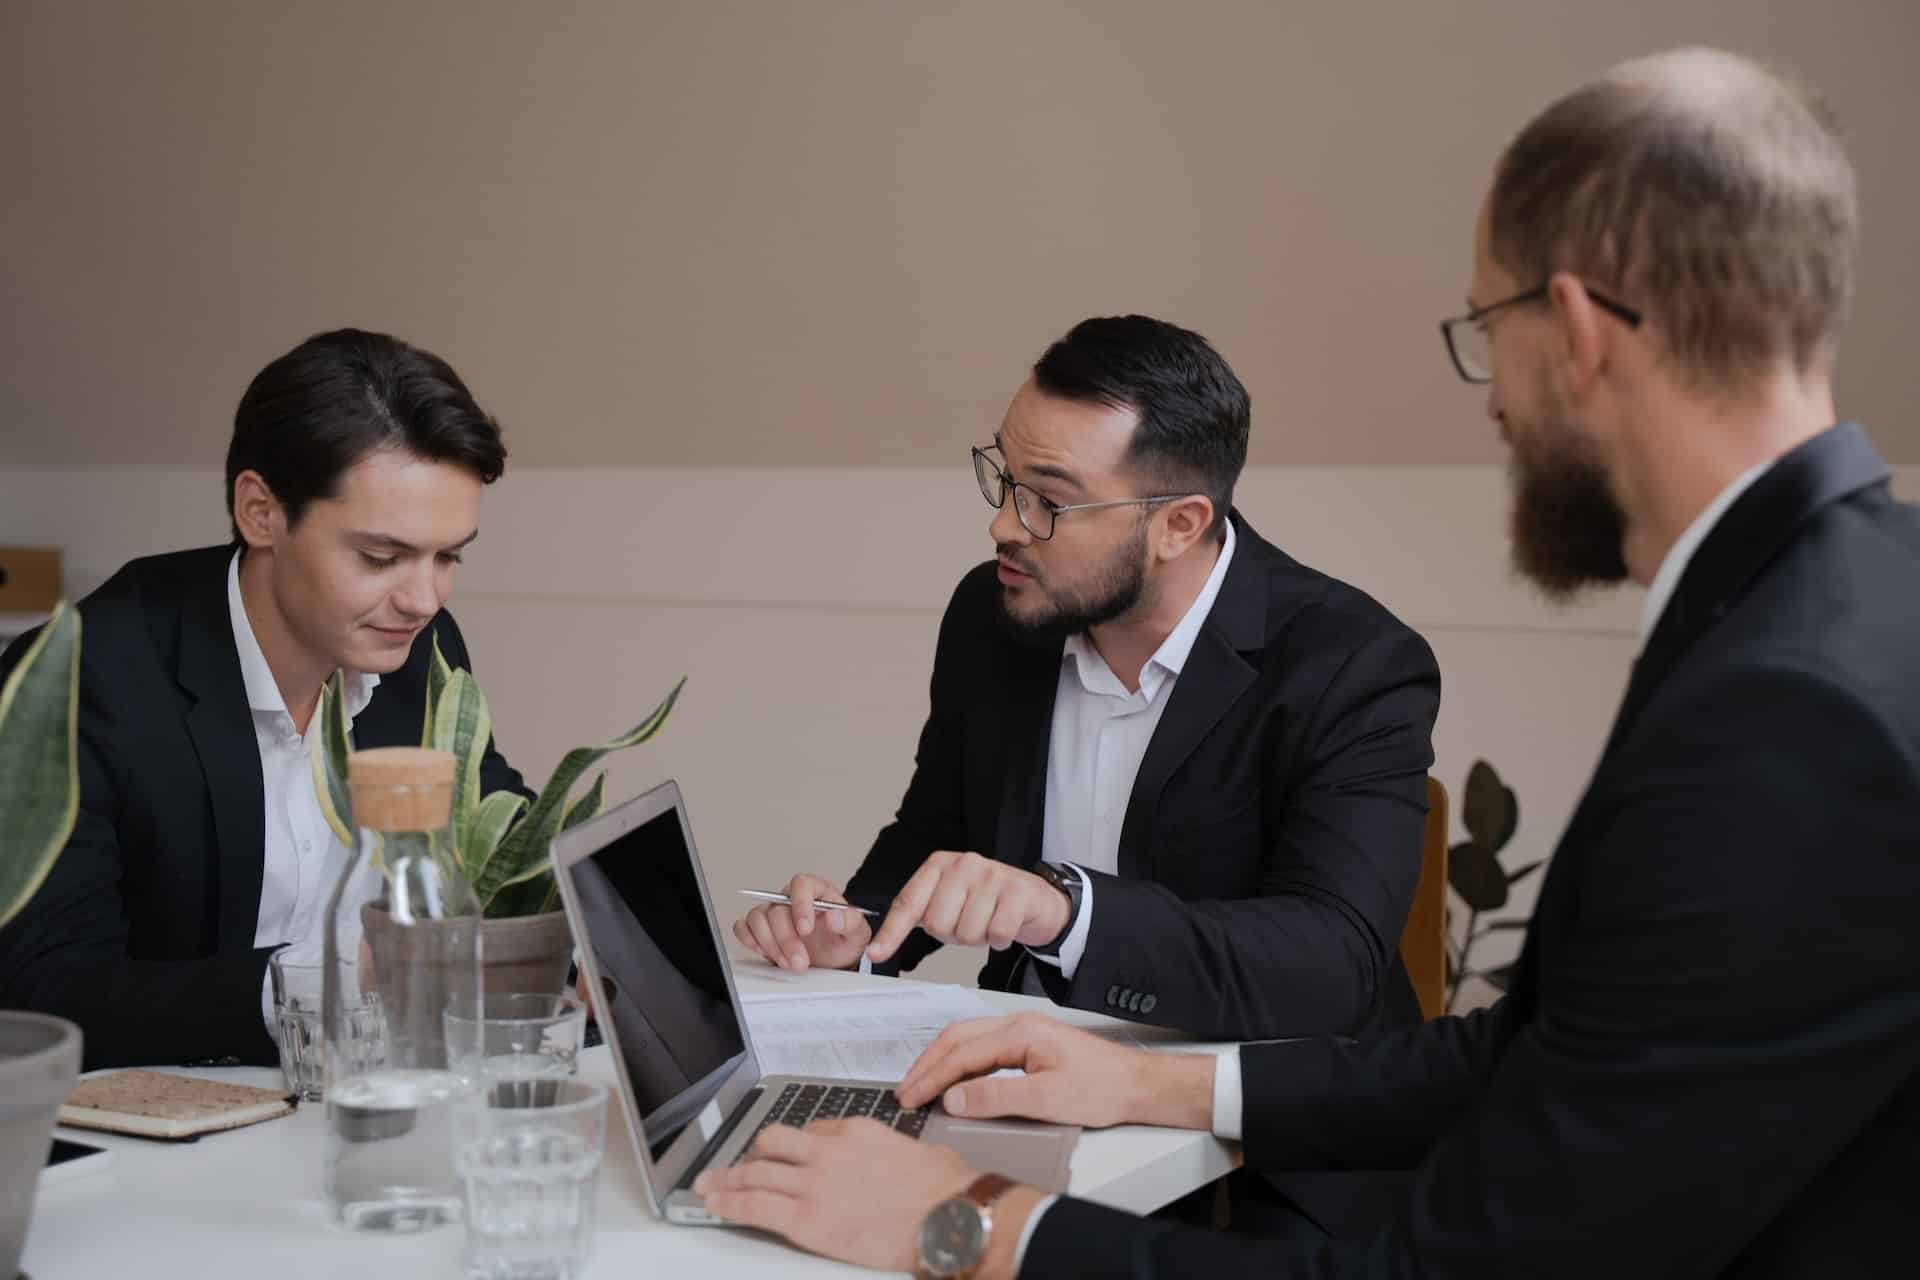 trois hommes en costume devant une table avec un ordinateur portable et des papiers